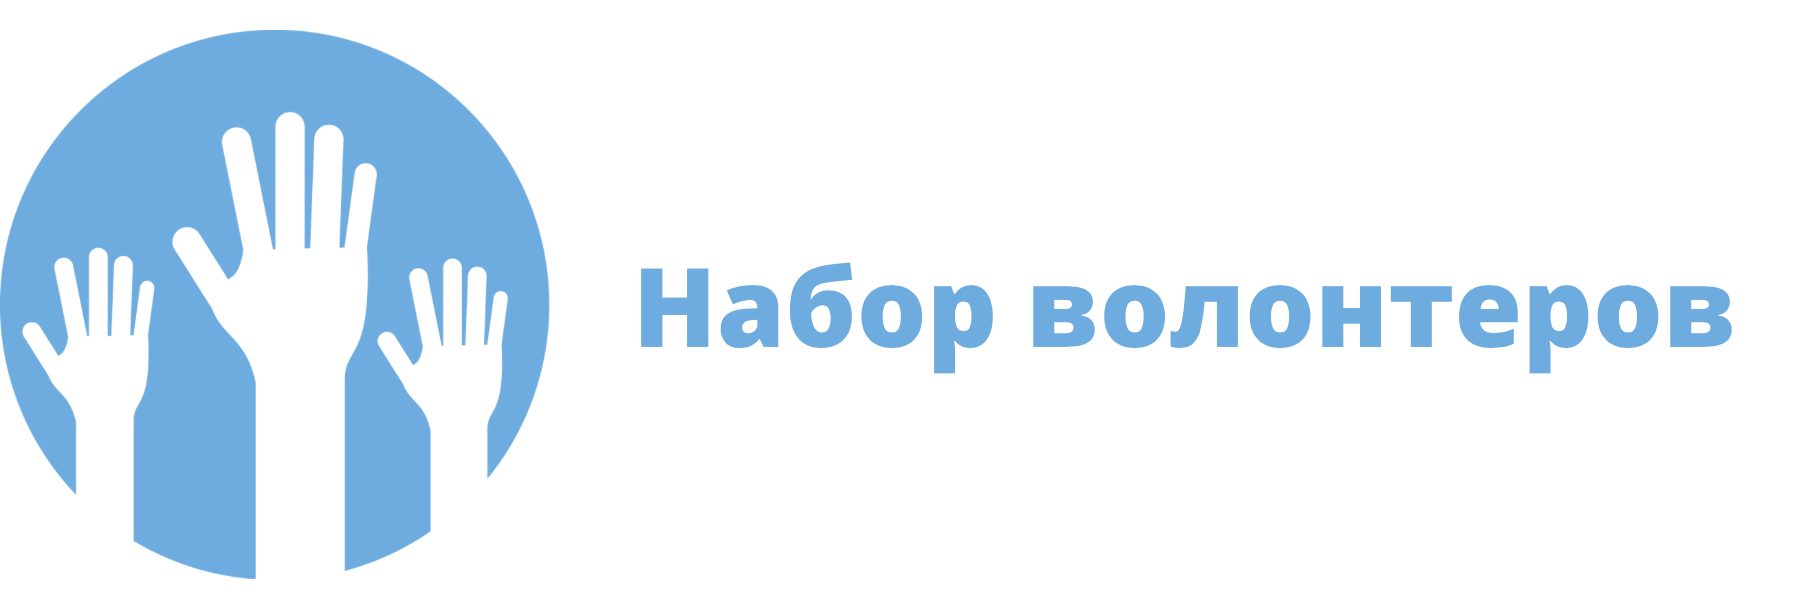 2021-08-04 Общественная палата Российской Федерации ведет набор волонтеров